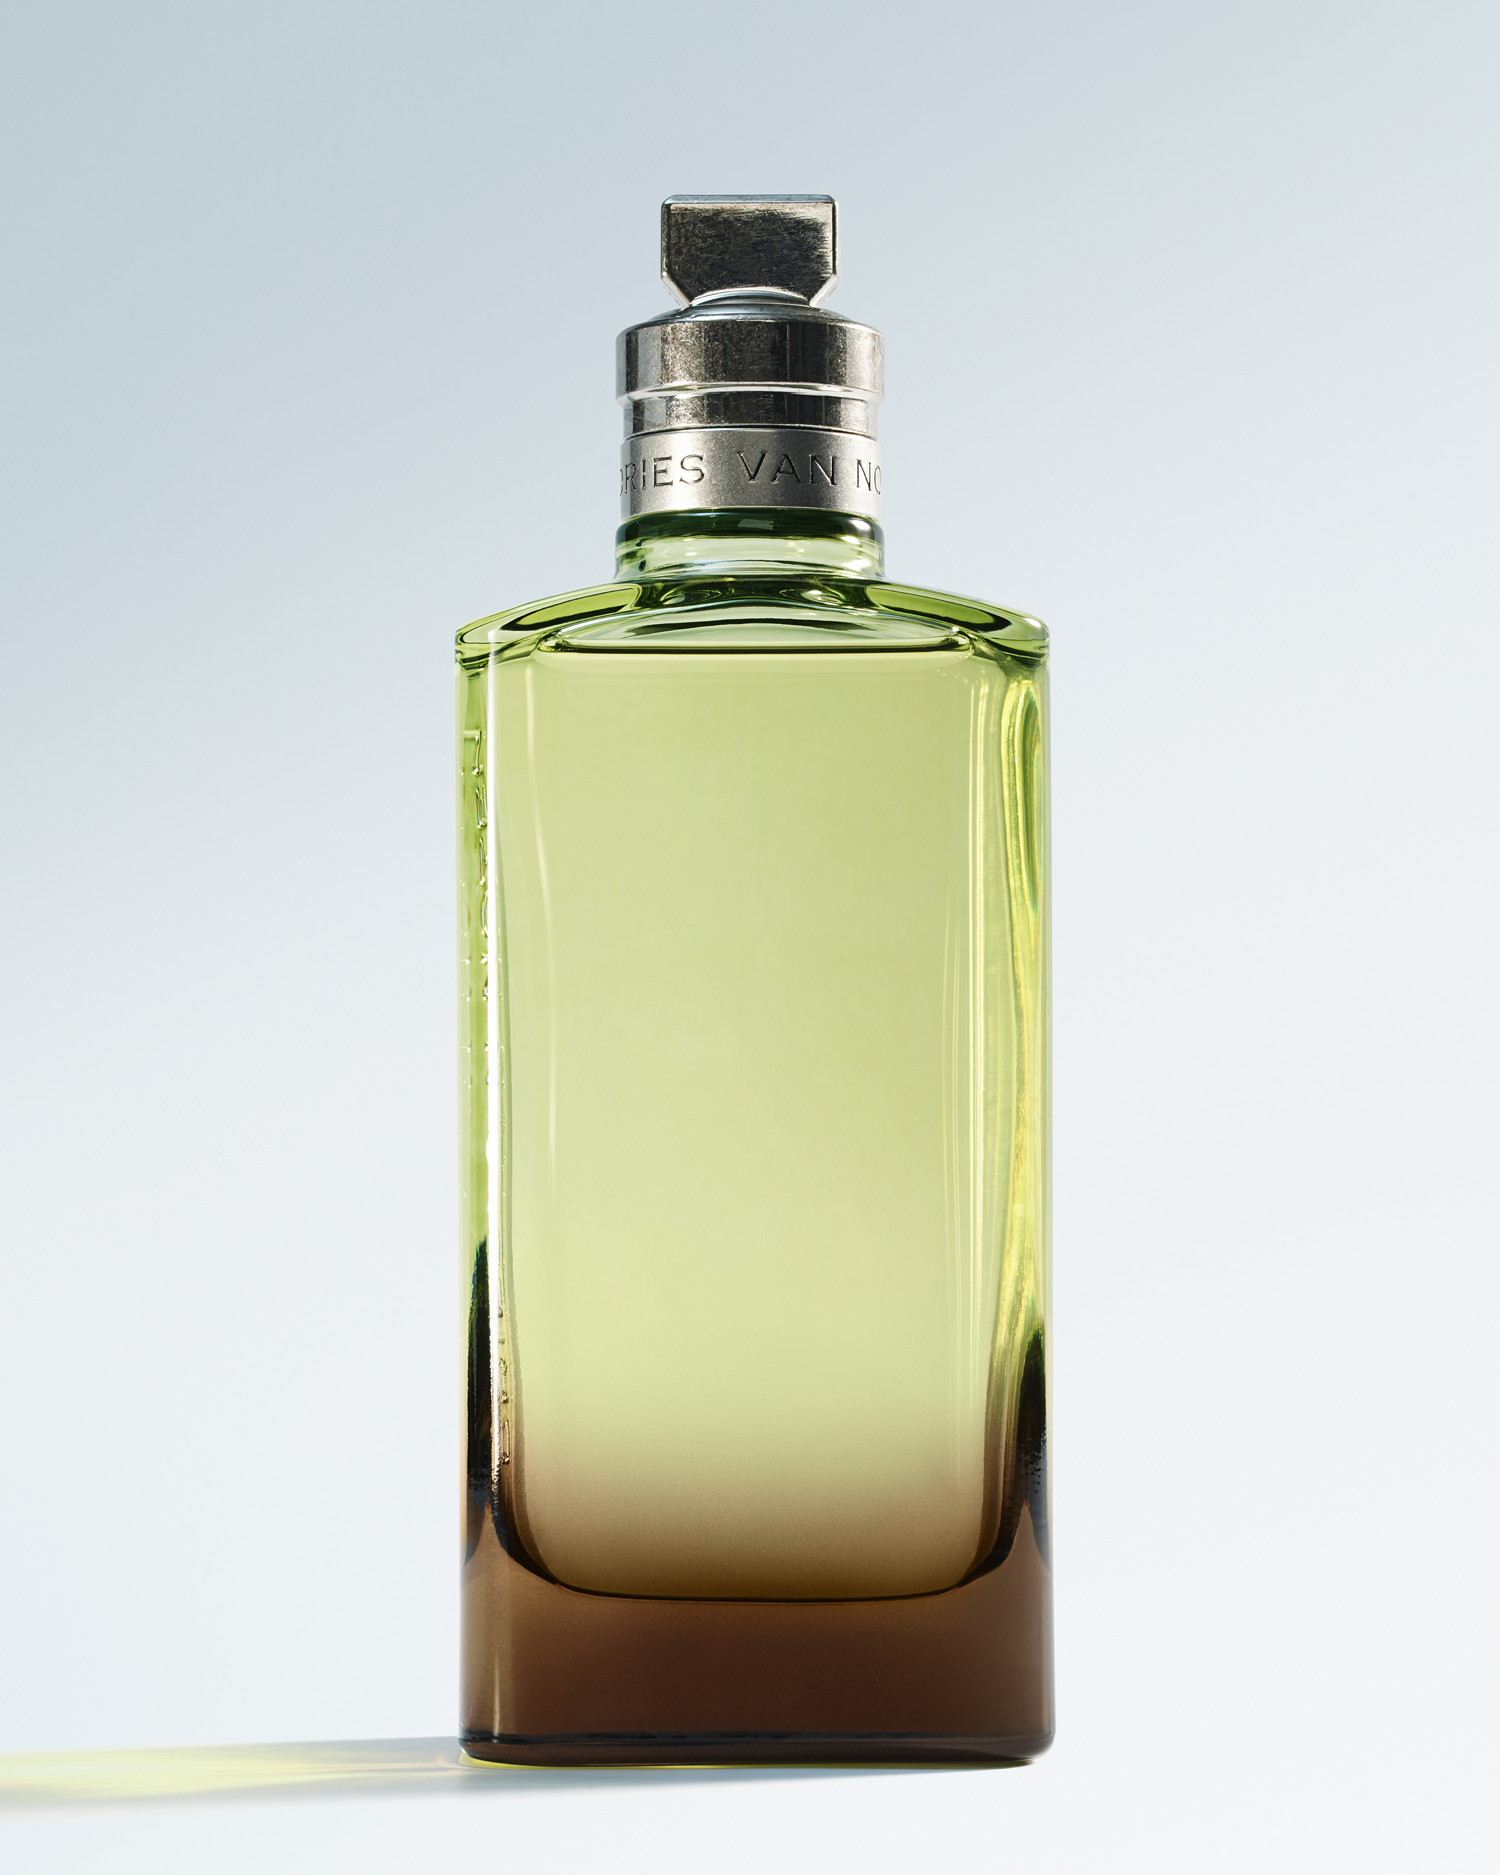 Dries Van Noten Mystic Moss perfume bottle